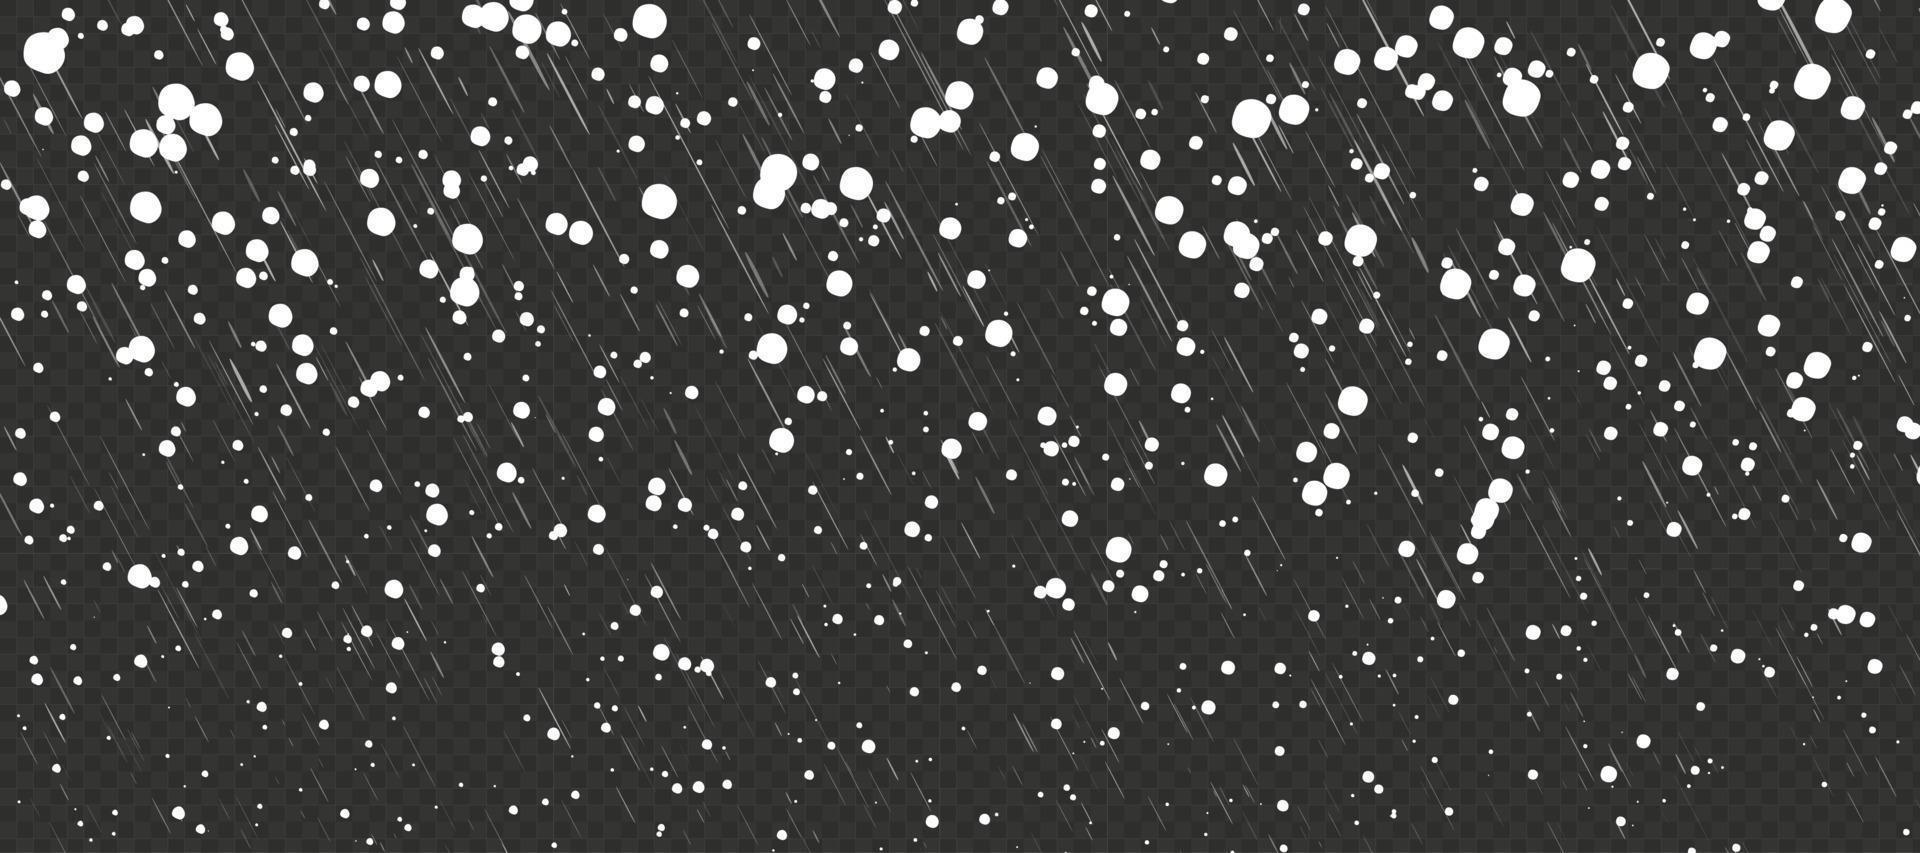 conditions météorologiques de tempête hivernale. chute de neige de dessin animé de vacances avec pluie. flocons aléatoires dans le ciel sur fond noir vecteur